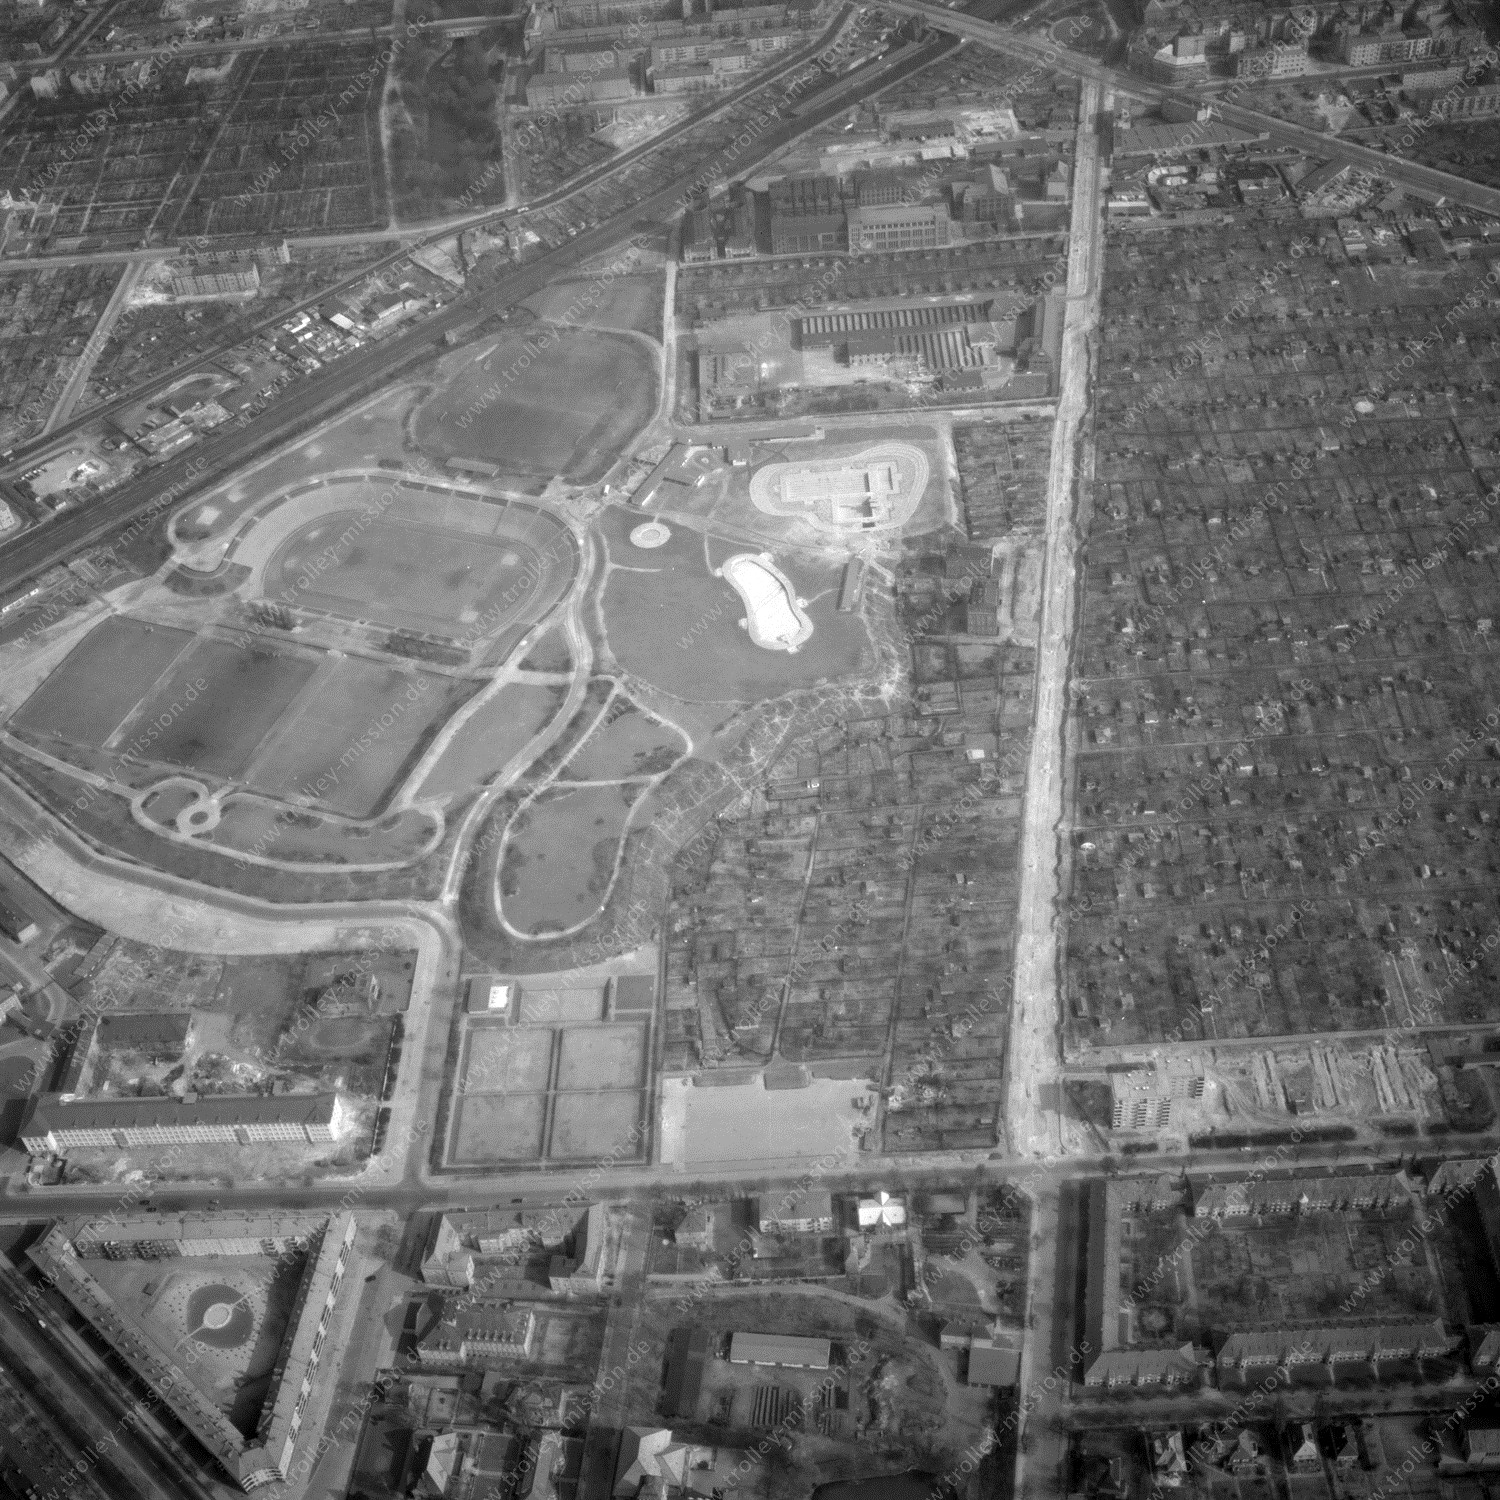 Alte Fotos und Luftbilder von Berlin - Luftbildaufnahme Nr. 01 - Historische Luftaufnahmen von West-Berlin aus dem Jahr 1954 - Flugstrecke Bravo